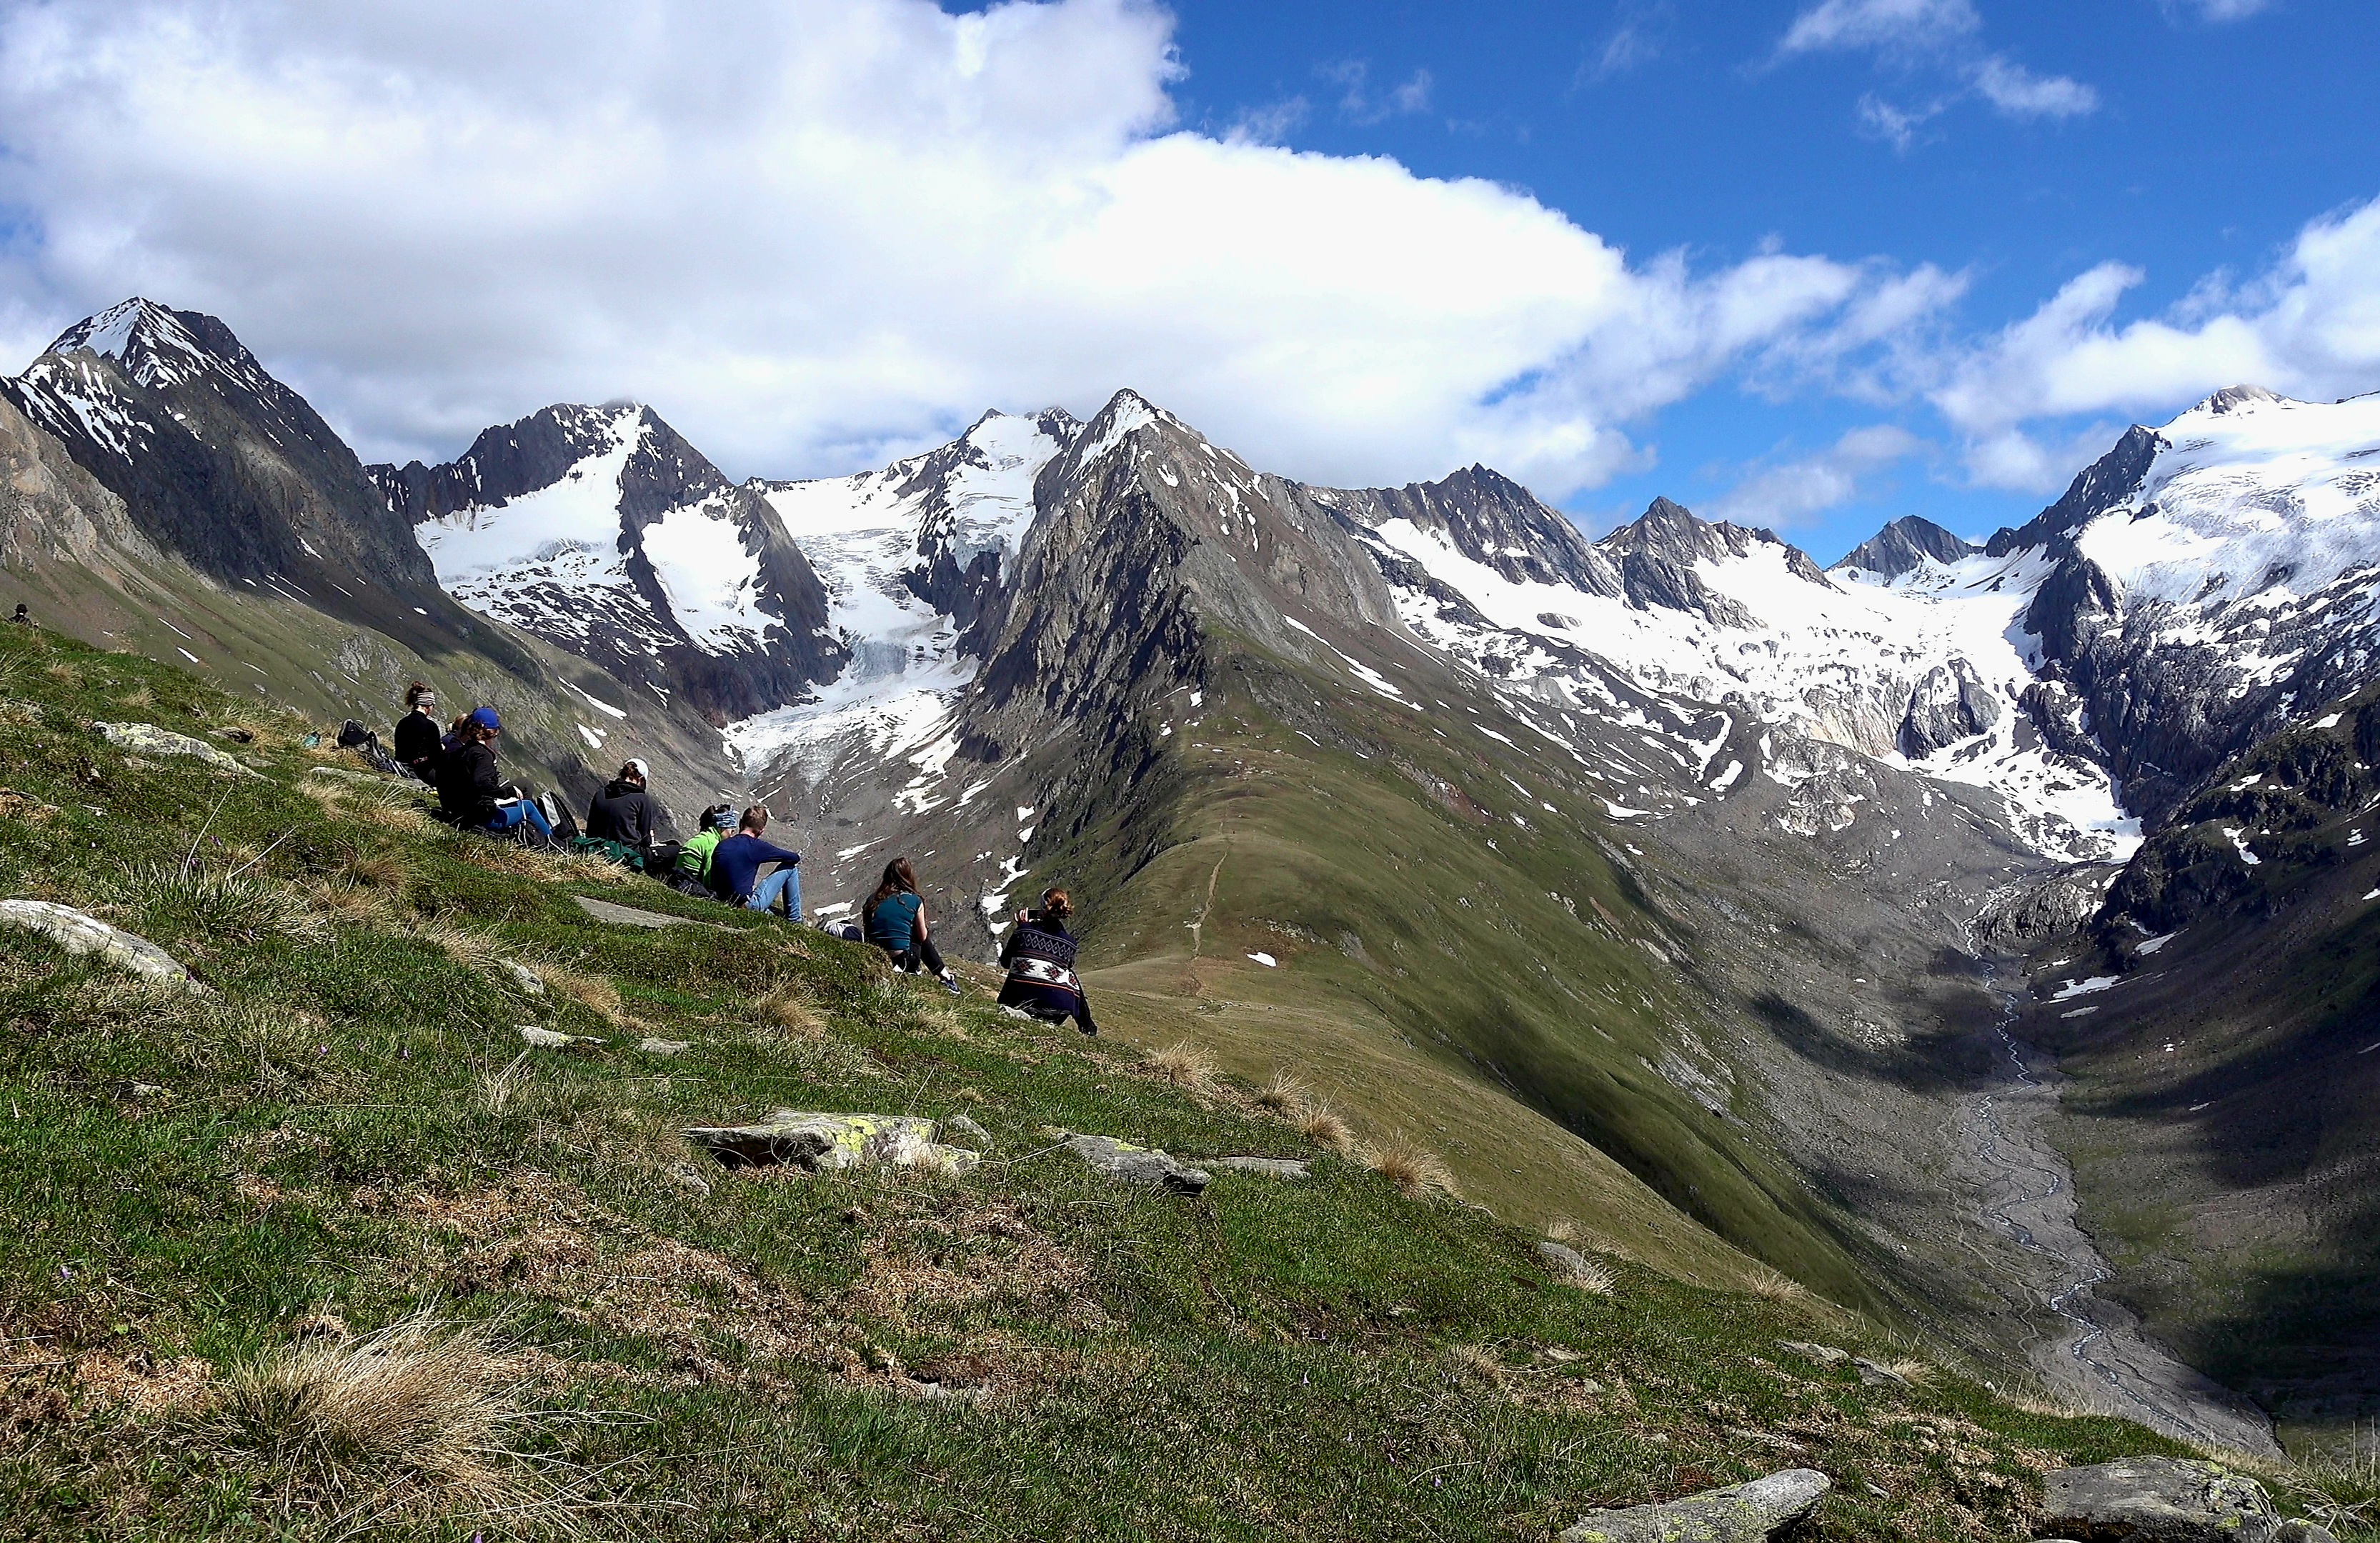 In the picture you can see the Alpes and the participants of the excursion sitting on the groundAuf dem Bild sieht man das Gebrige der Alpen und die Exkursionsteilnehmen, die dort auf der Wiese sitzen